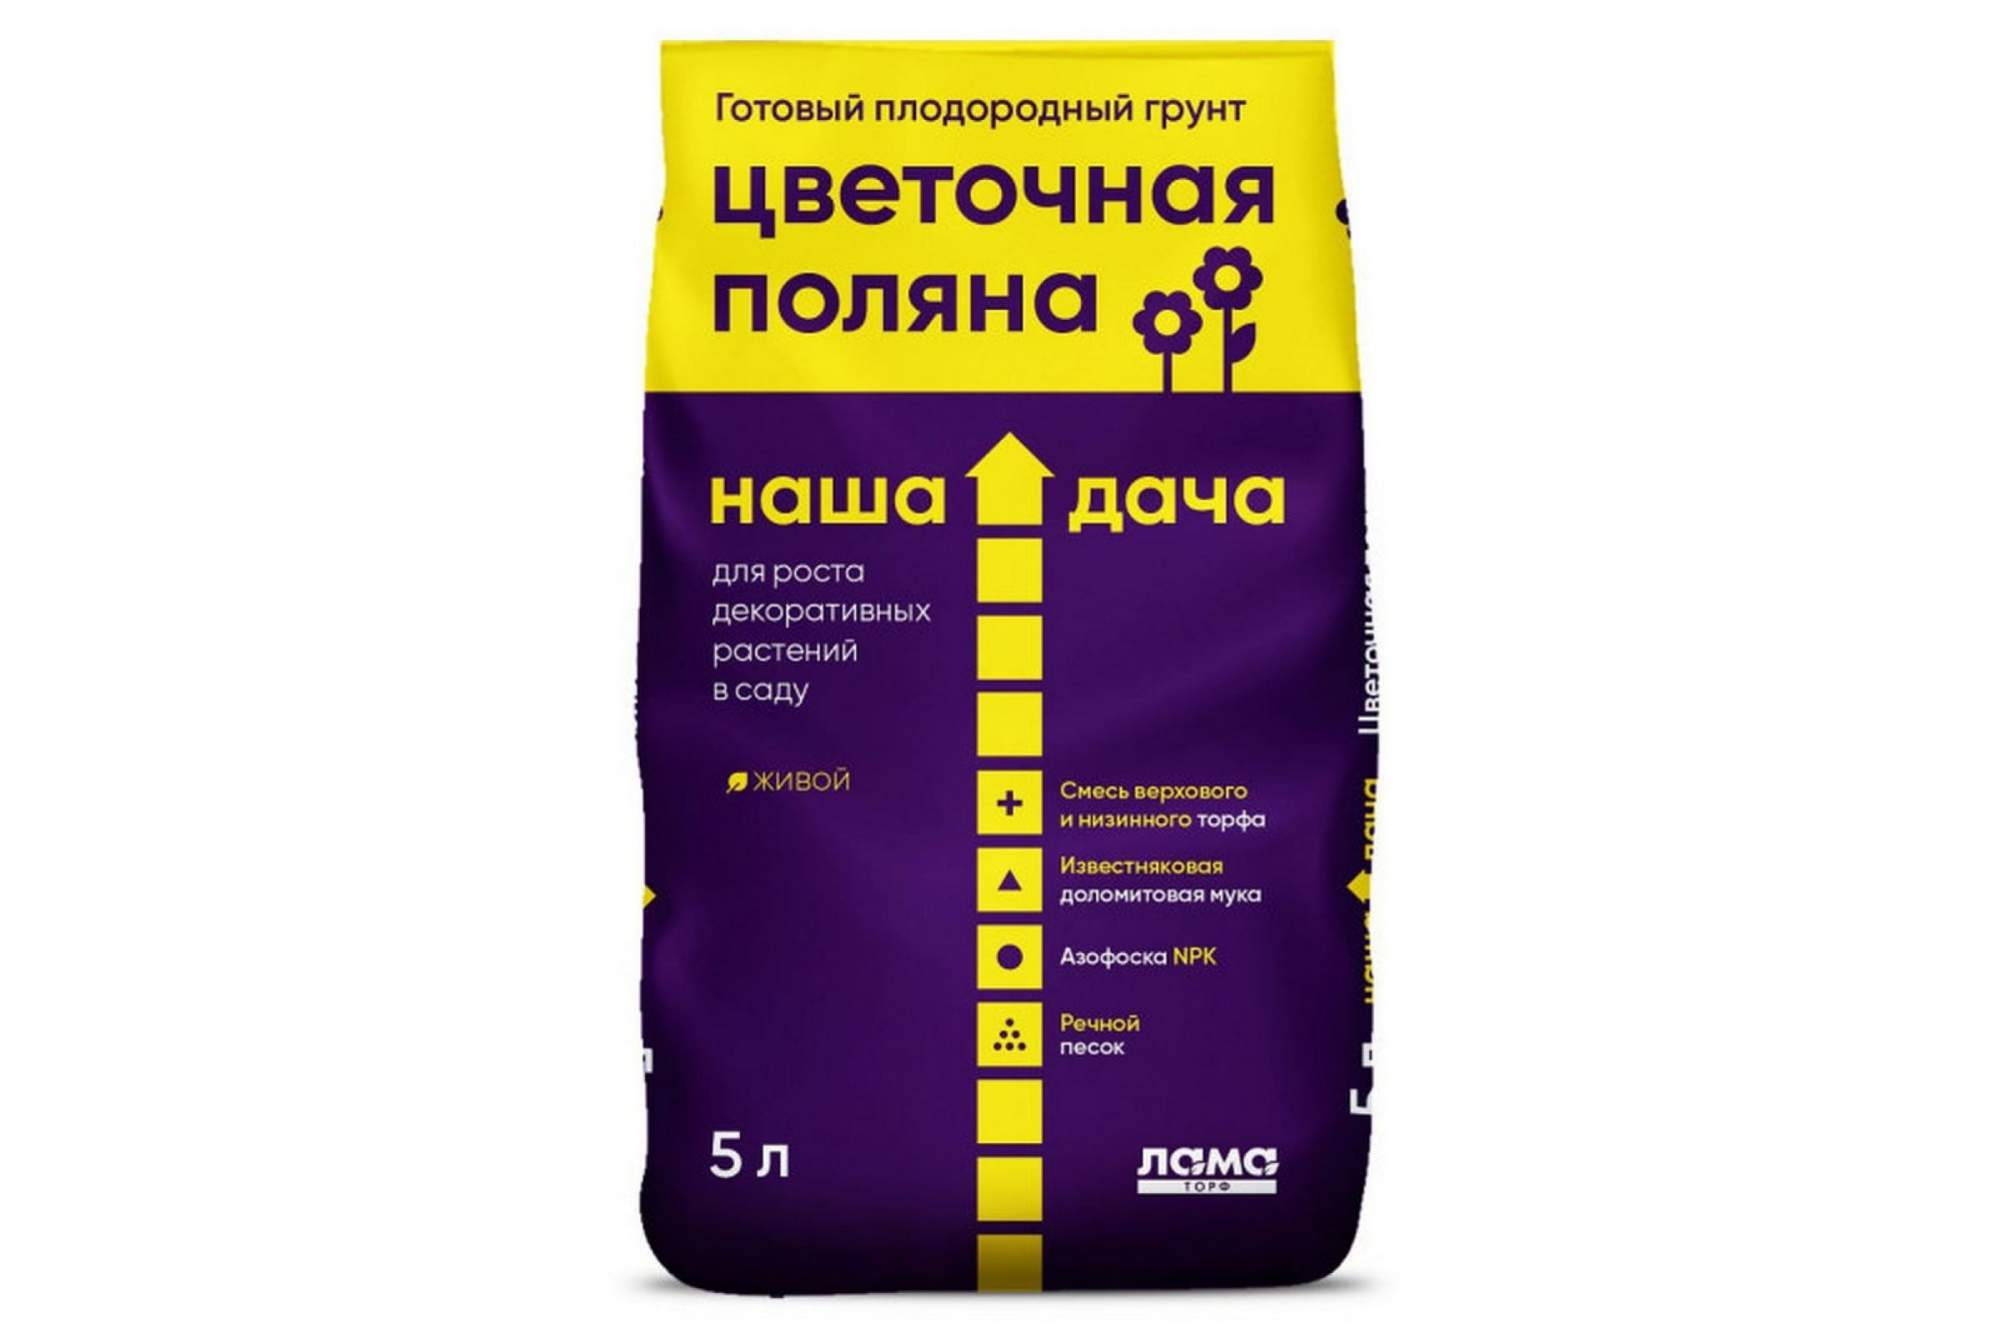 Грунт для цветов "Цветочная поляна" Наша Дача, 5л - купить в Москве, цены на Мегамаркет